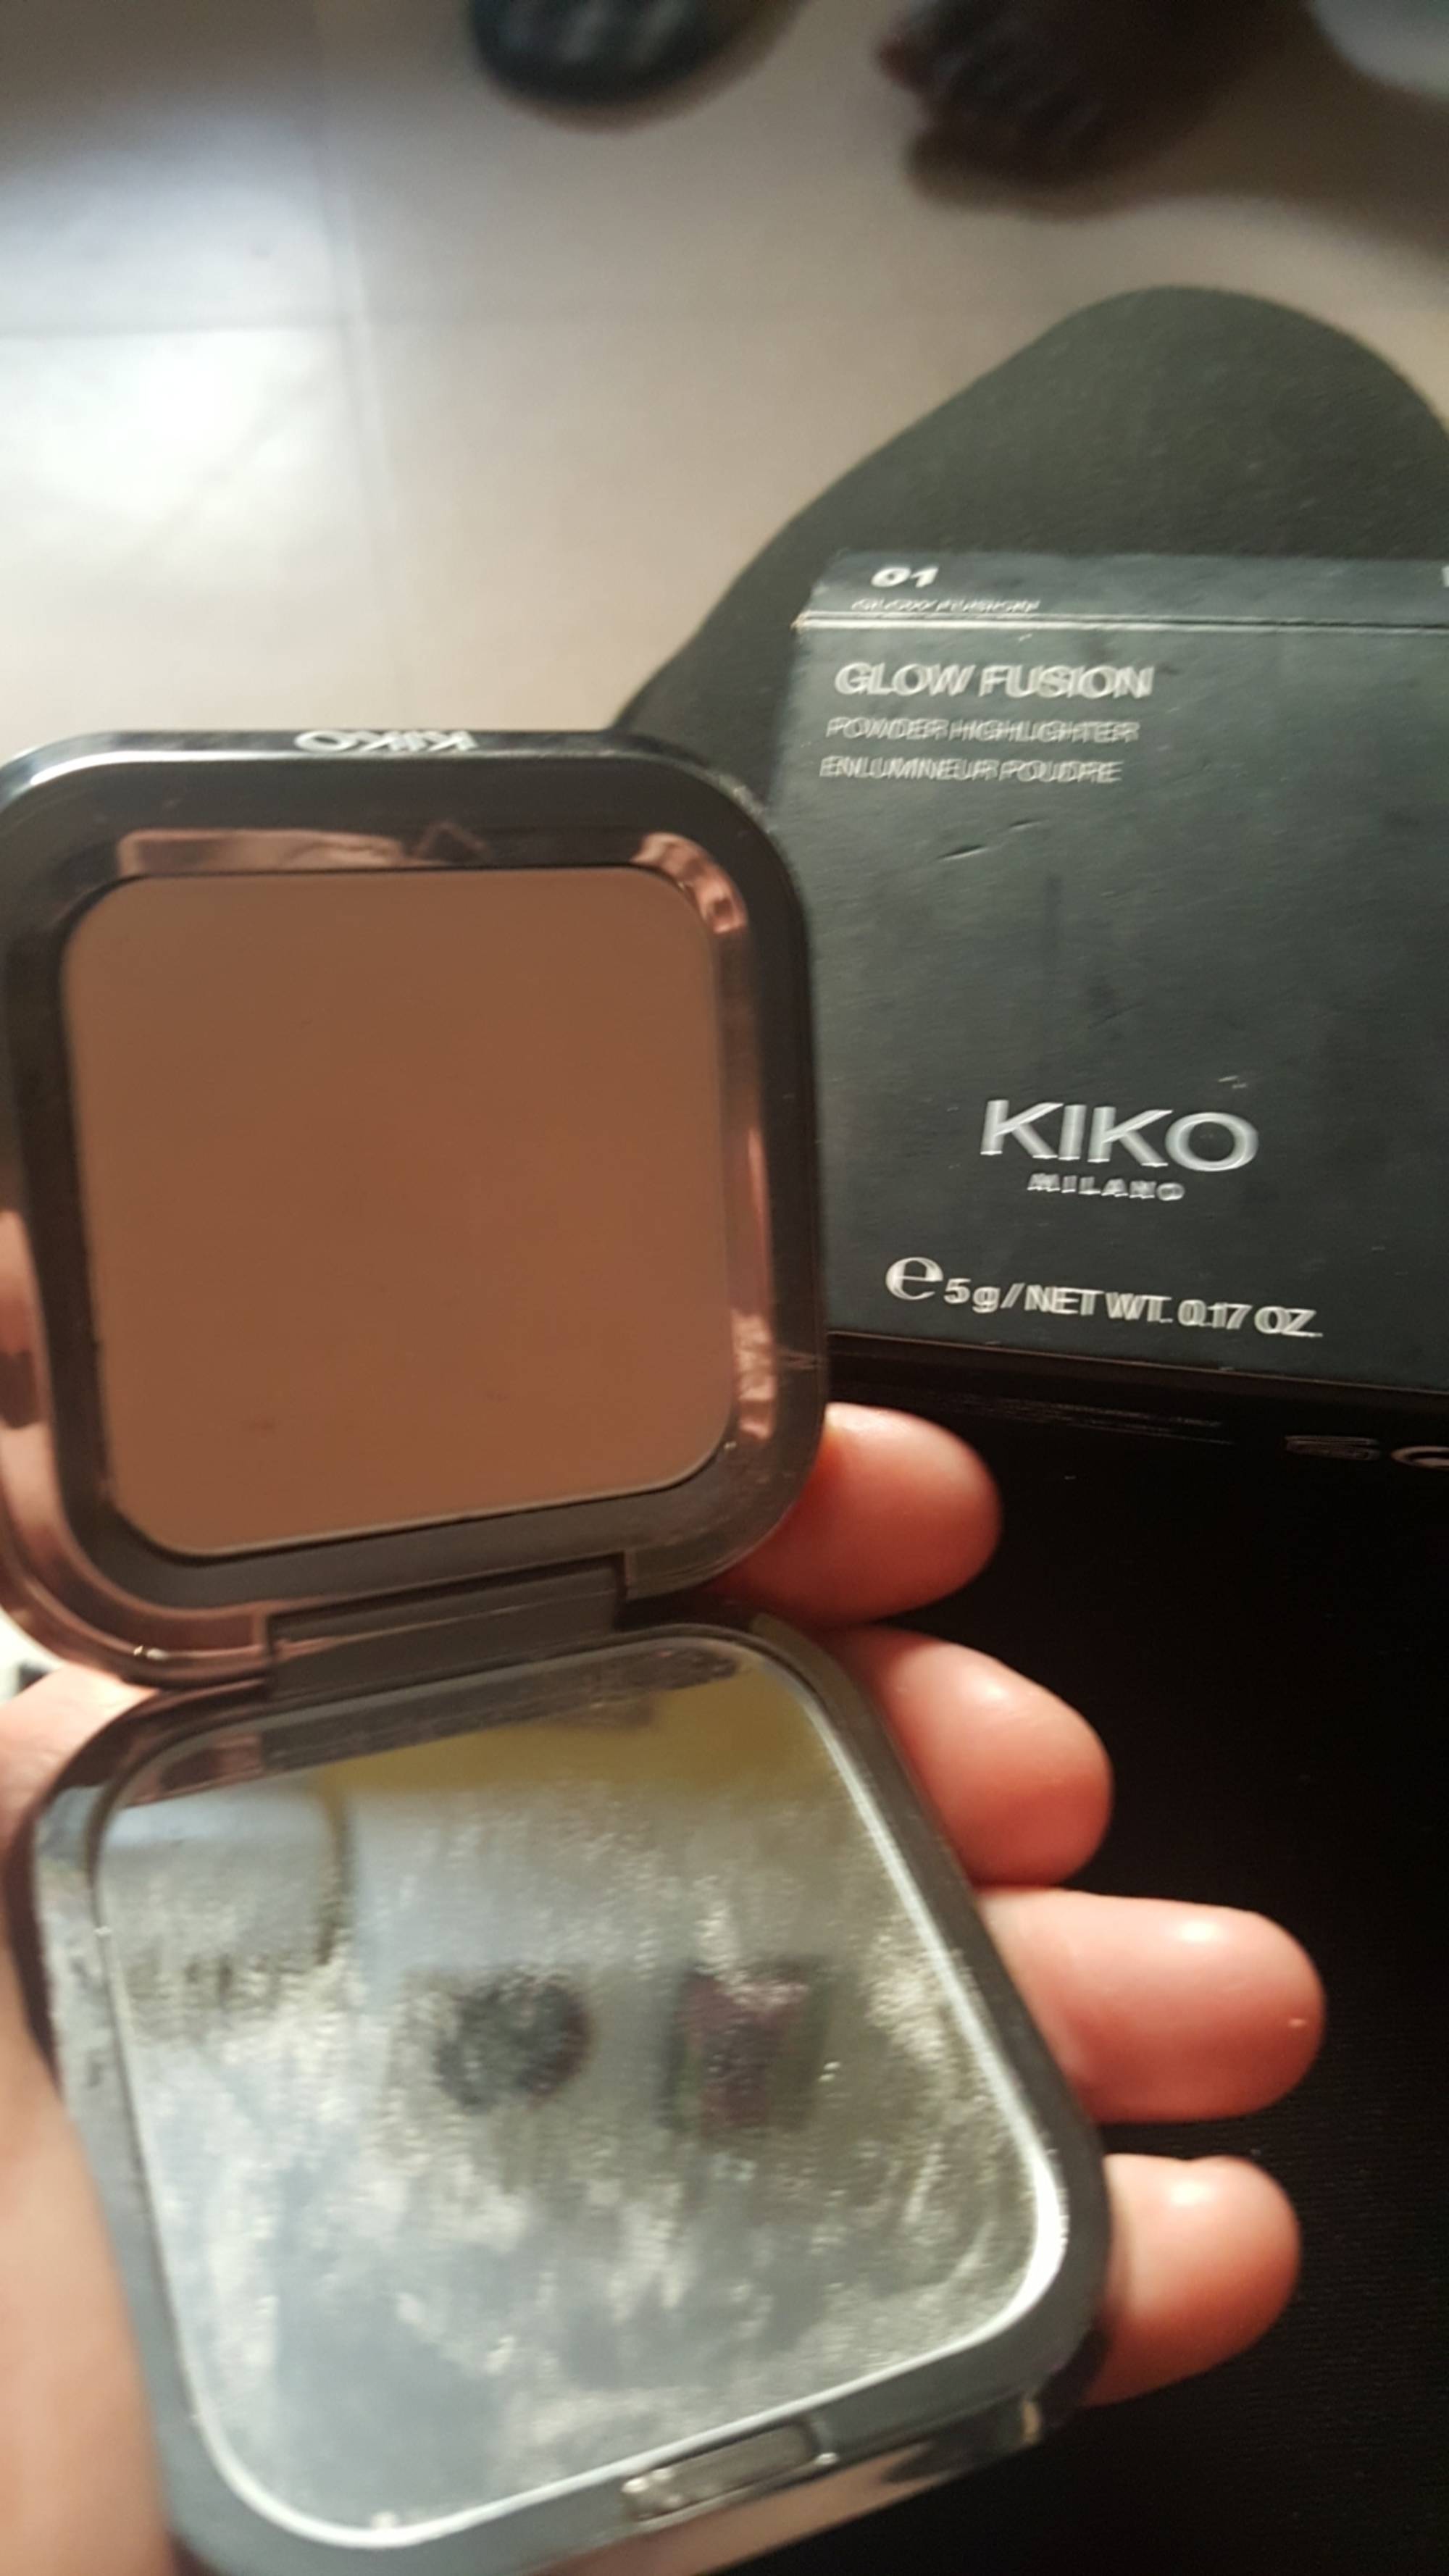 KIKO - Glow Fusion Powder Highlighter - 01